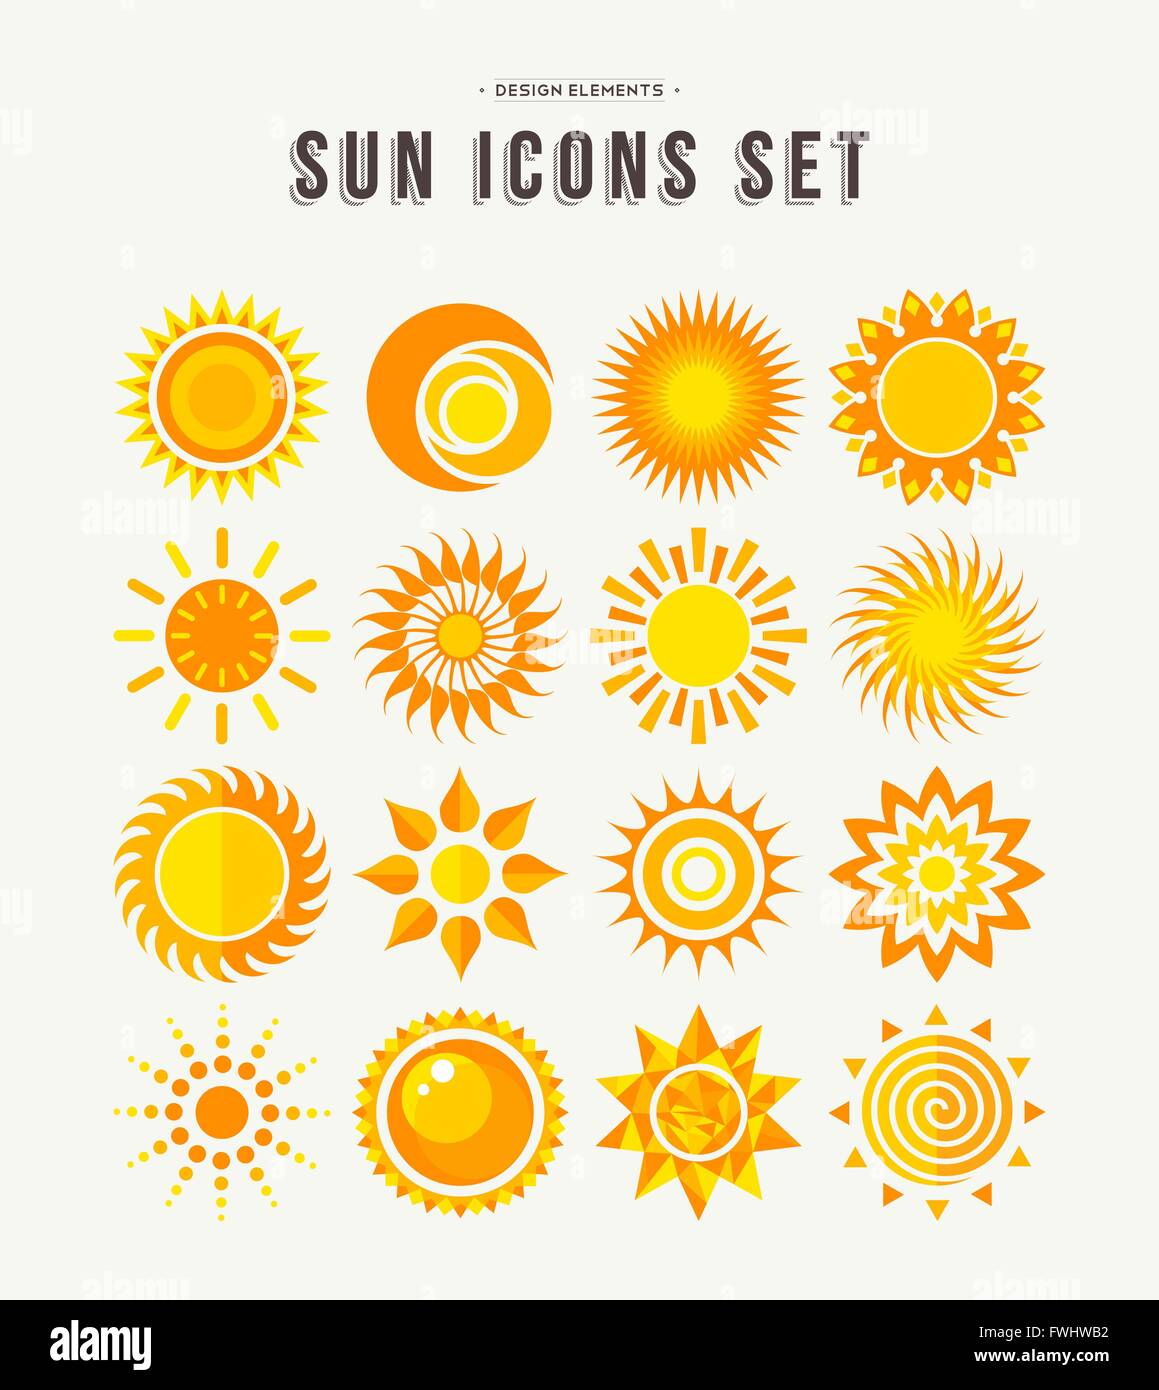 Set von Sonne Symbol Illustrationen, flache abstrakte gelbe Designs in Kunst für Wetter oder Klima-Projekt. EPS10 Vektor. Stock Vektor